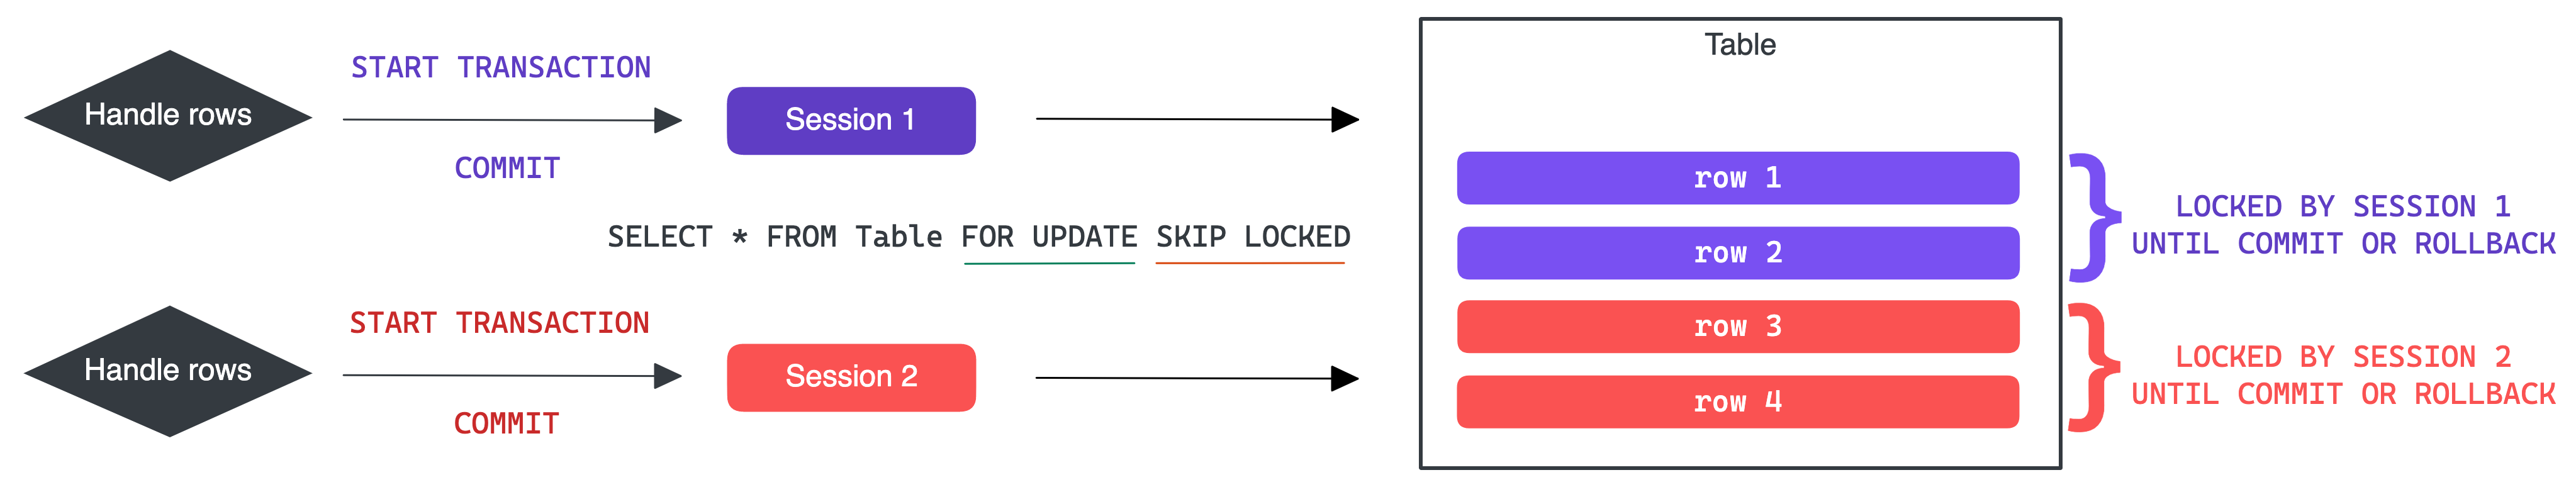 Distribute rows lock mechanism